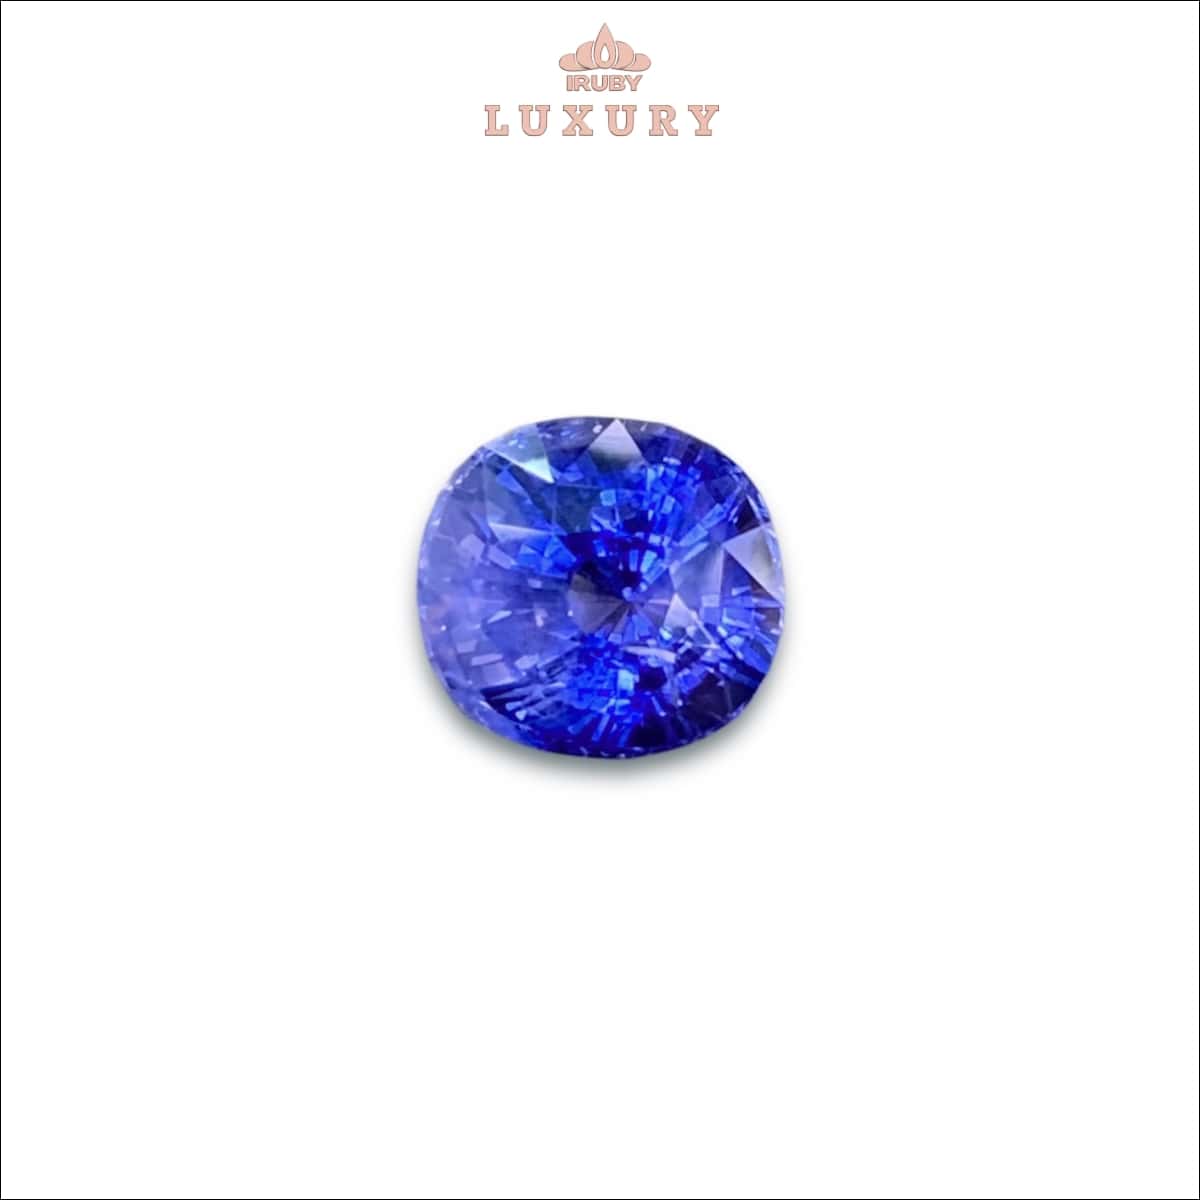 Viên Sapphire màu xanh lam hoàng gia tự nhiên - IRBS12 2385128